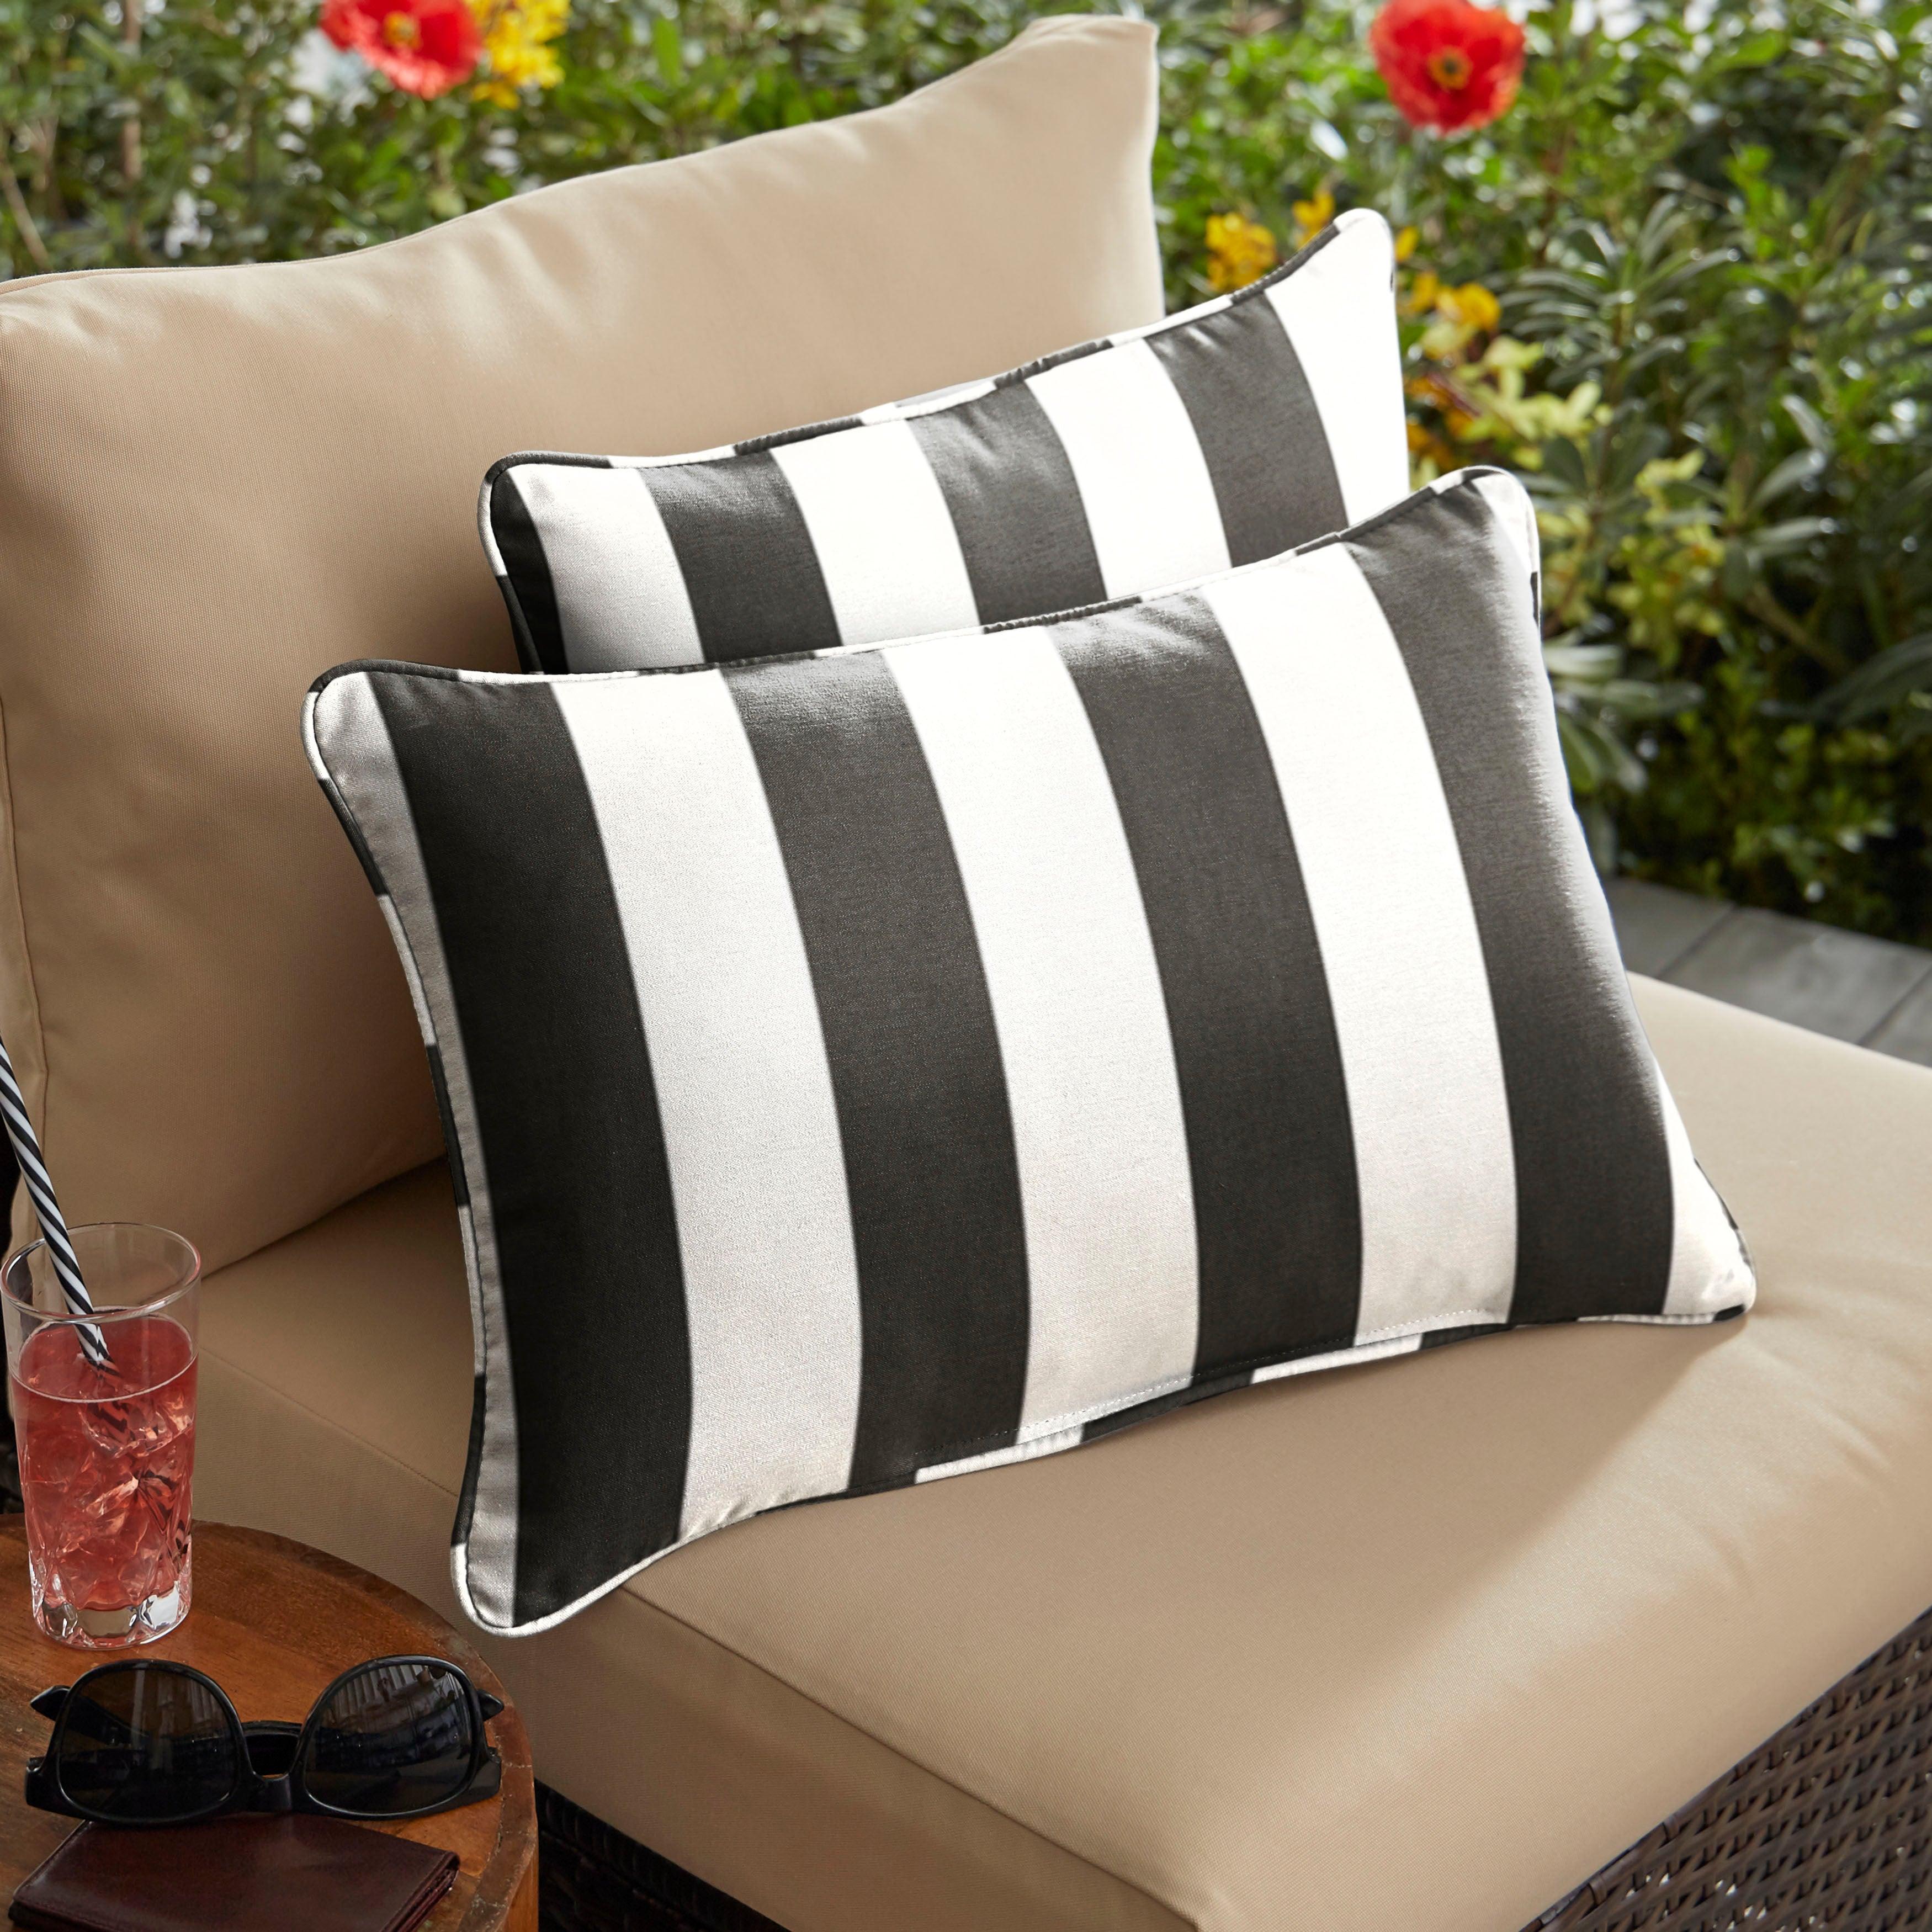 Sunbrella Cabana Lumbar Corded Pillow (Set of 2) - Sorra Home